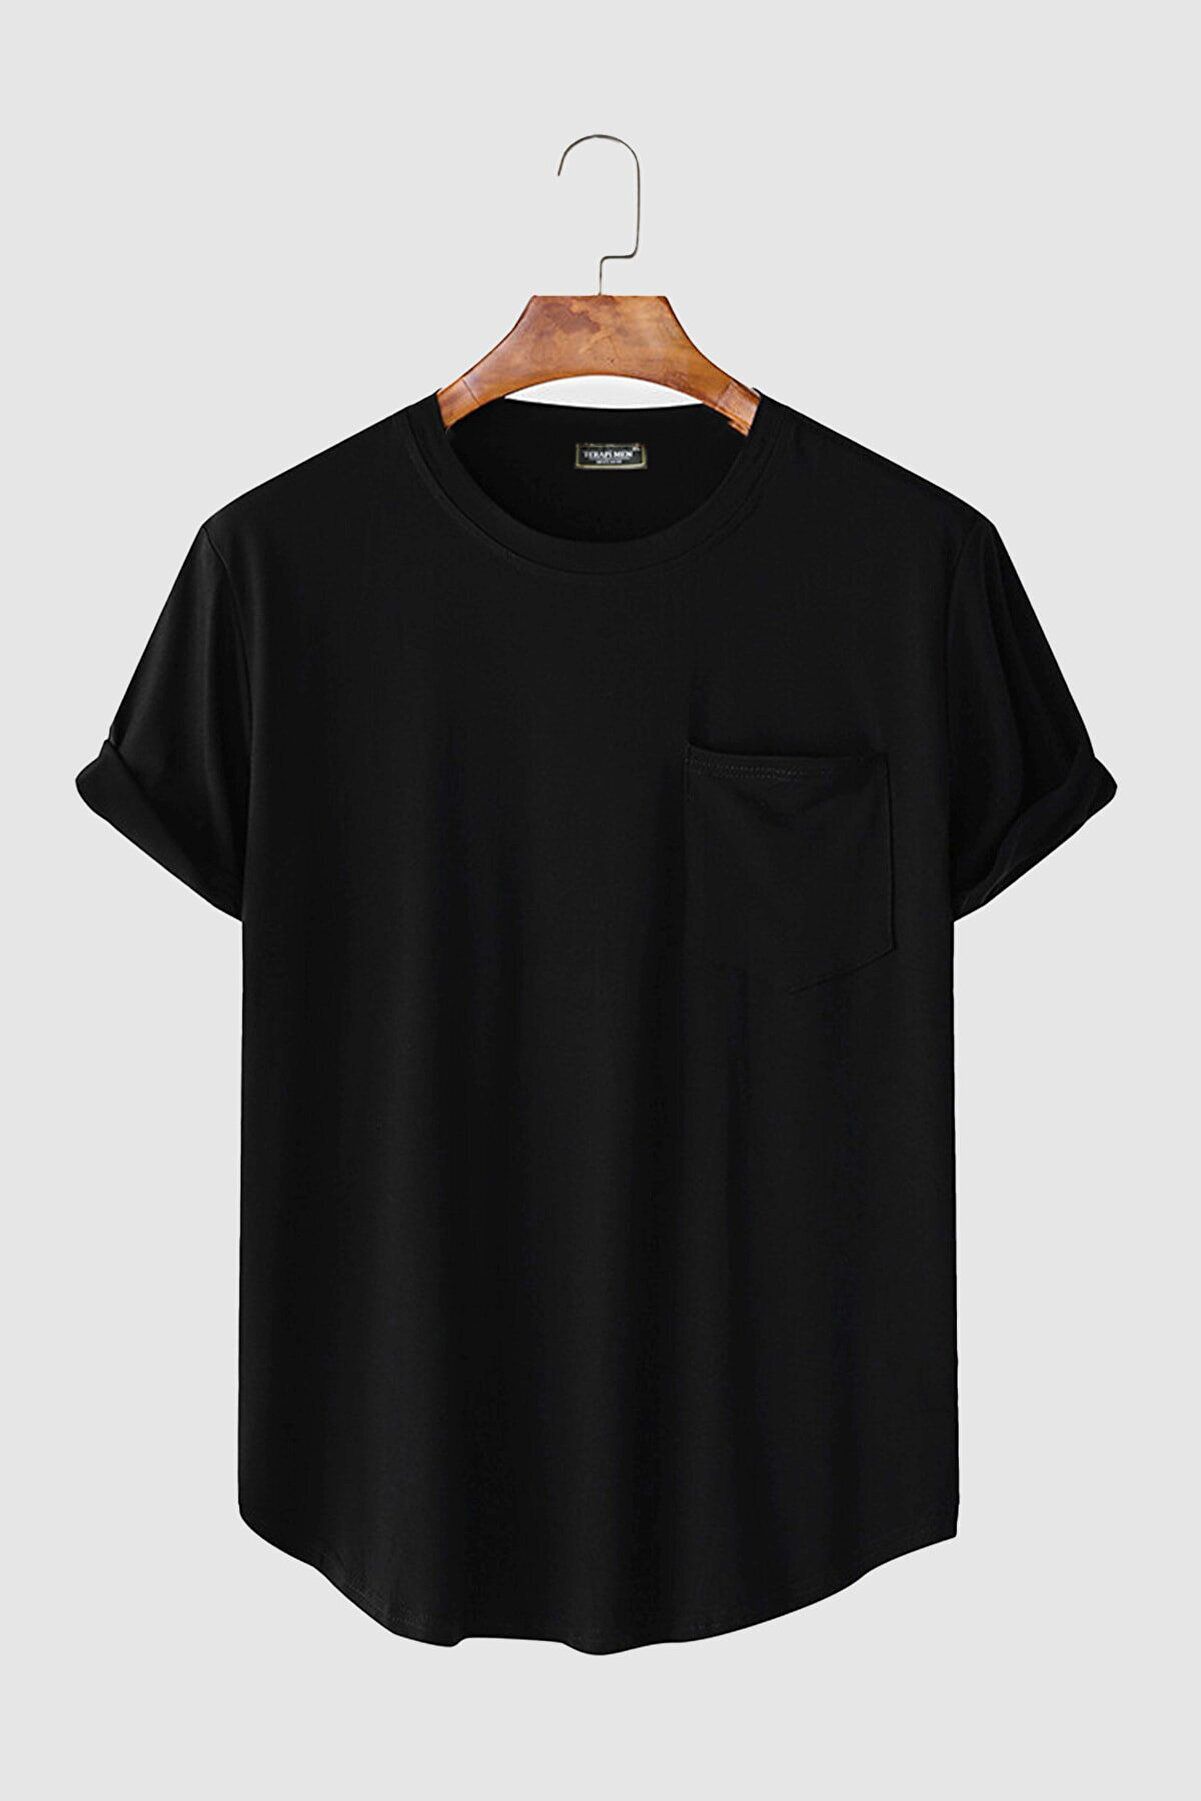 VEAVEN Erkek Yuvarlak Yaka Oval Kesim Cepli Basic T-shirt Stk306-0000001-1-5 Siyah